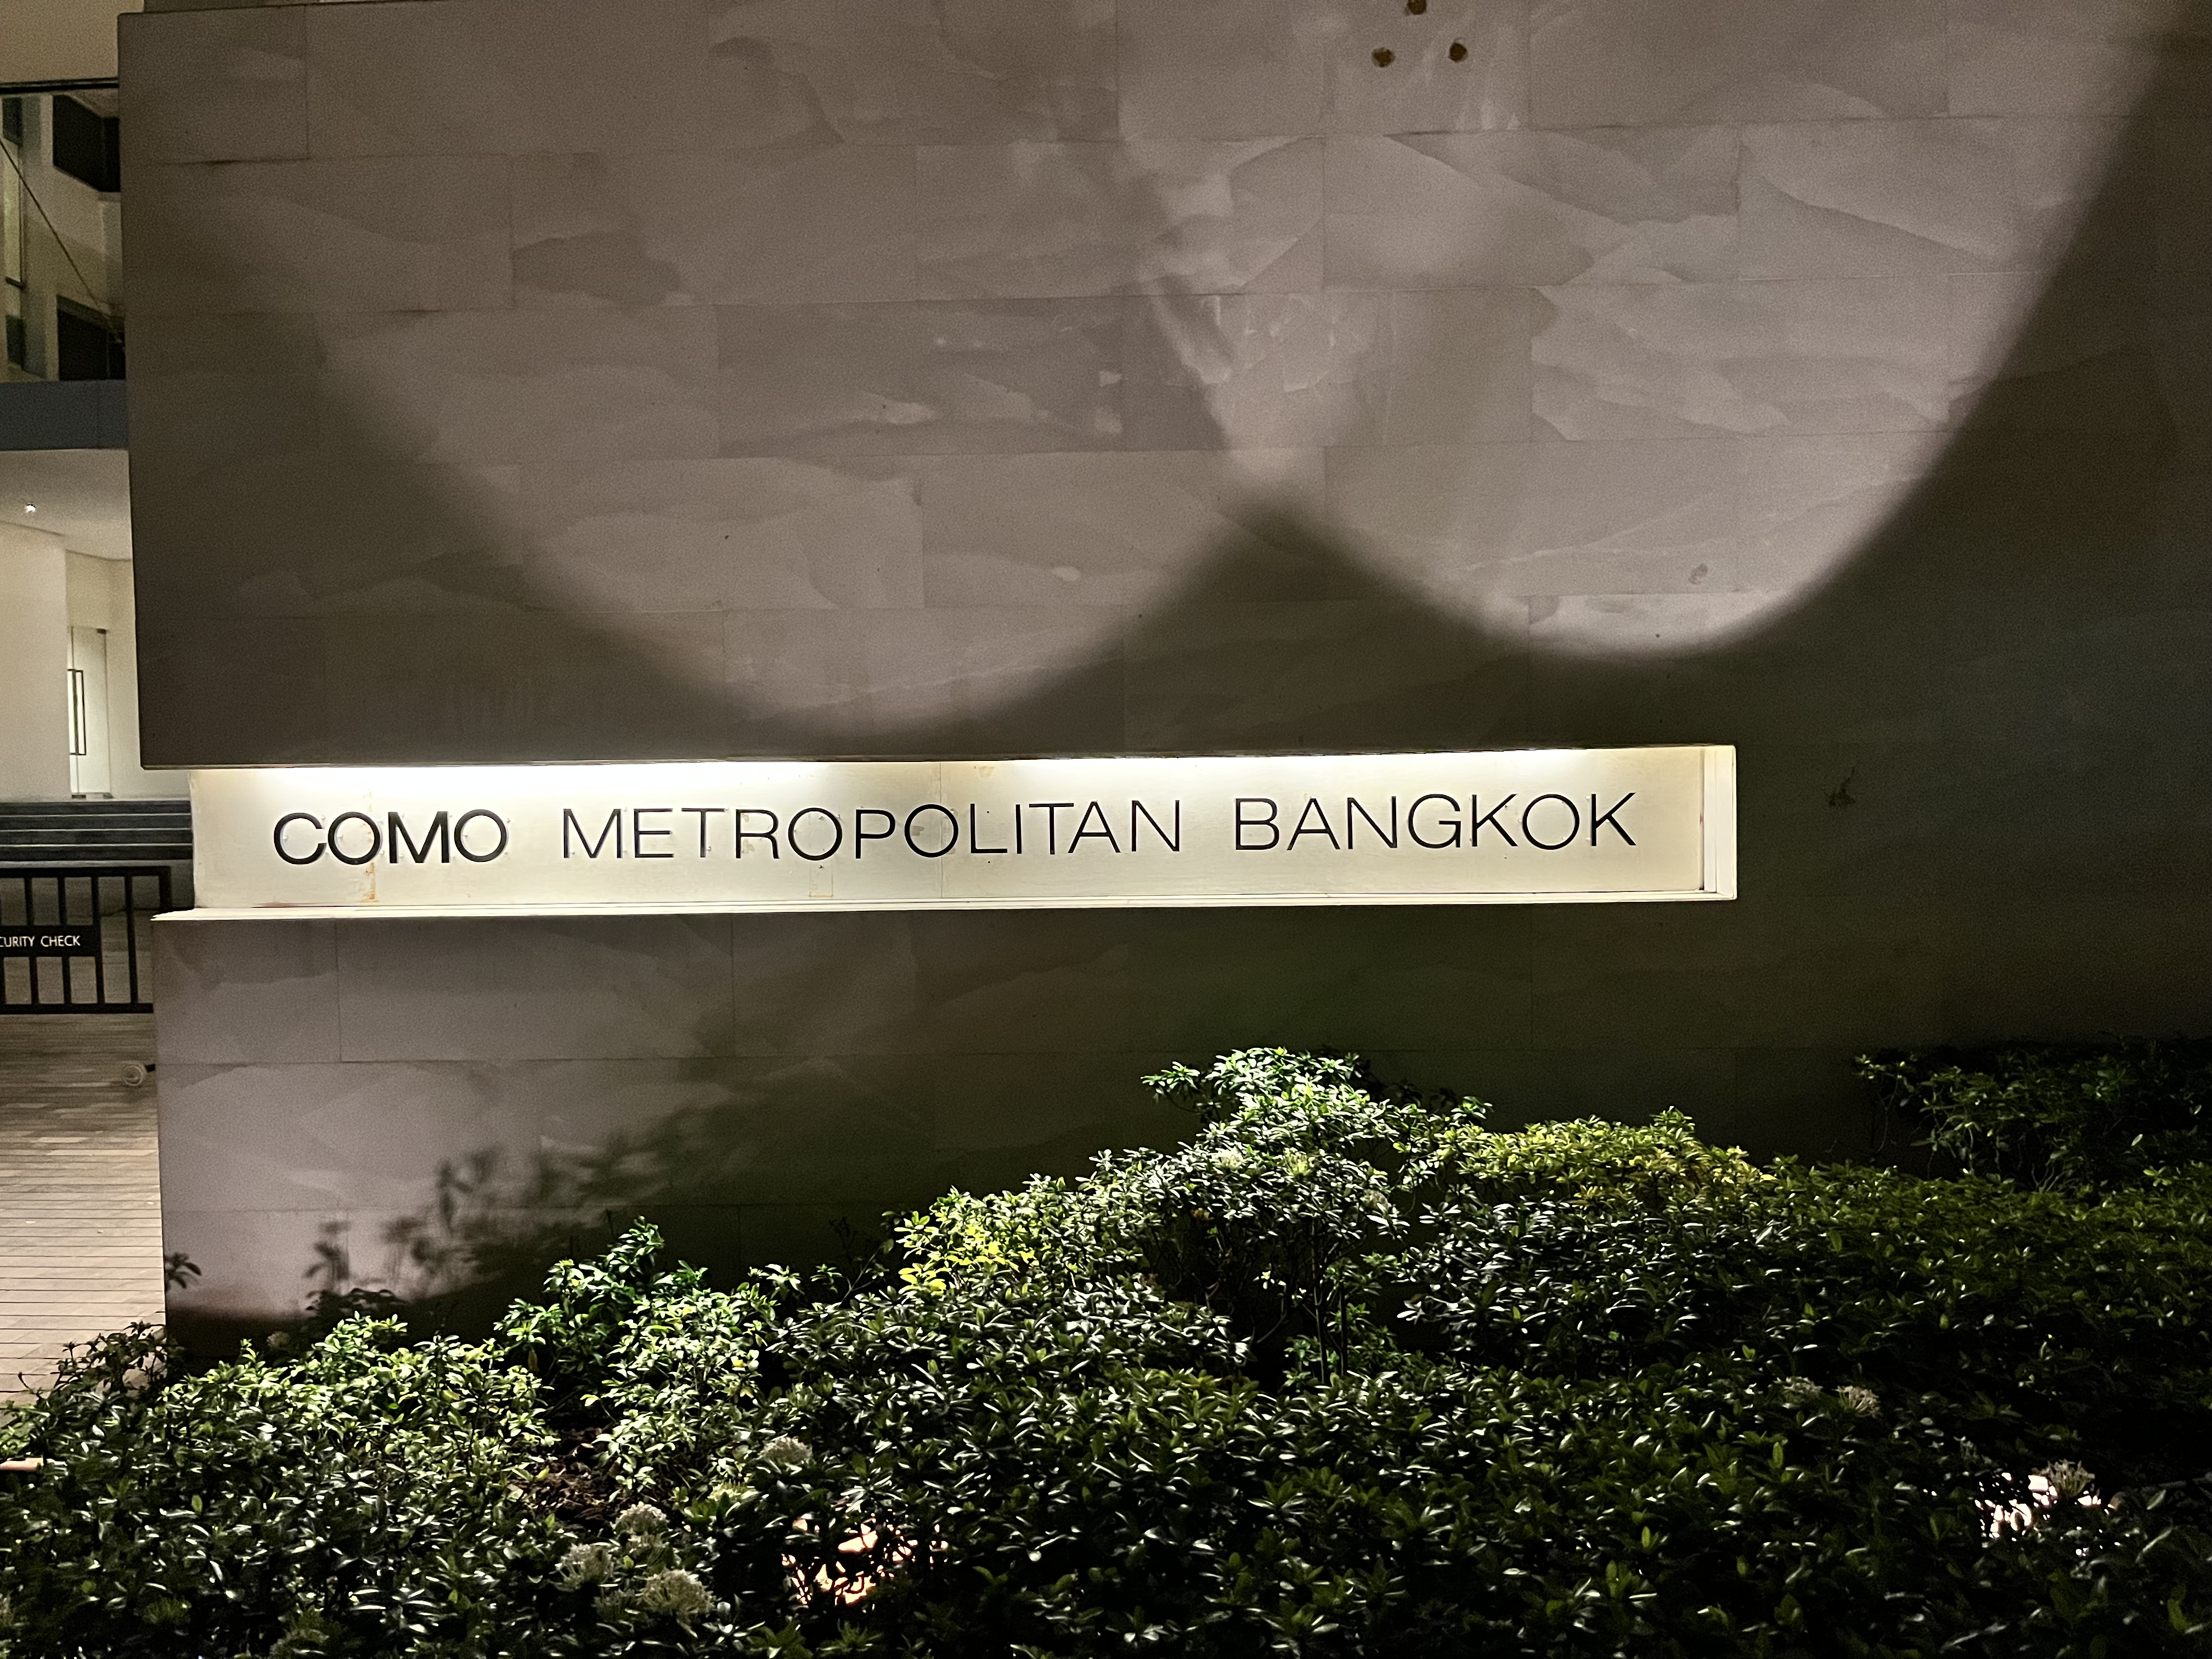 COMO Metropolitan Bangkok - Metropolitan King